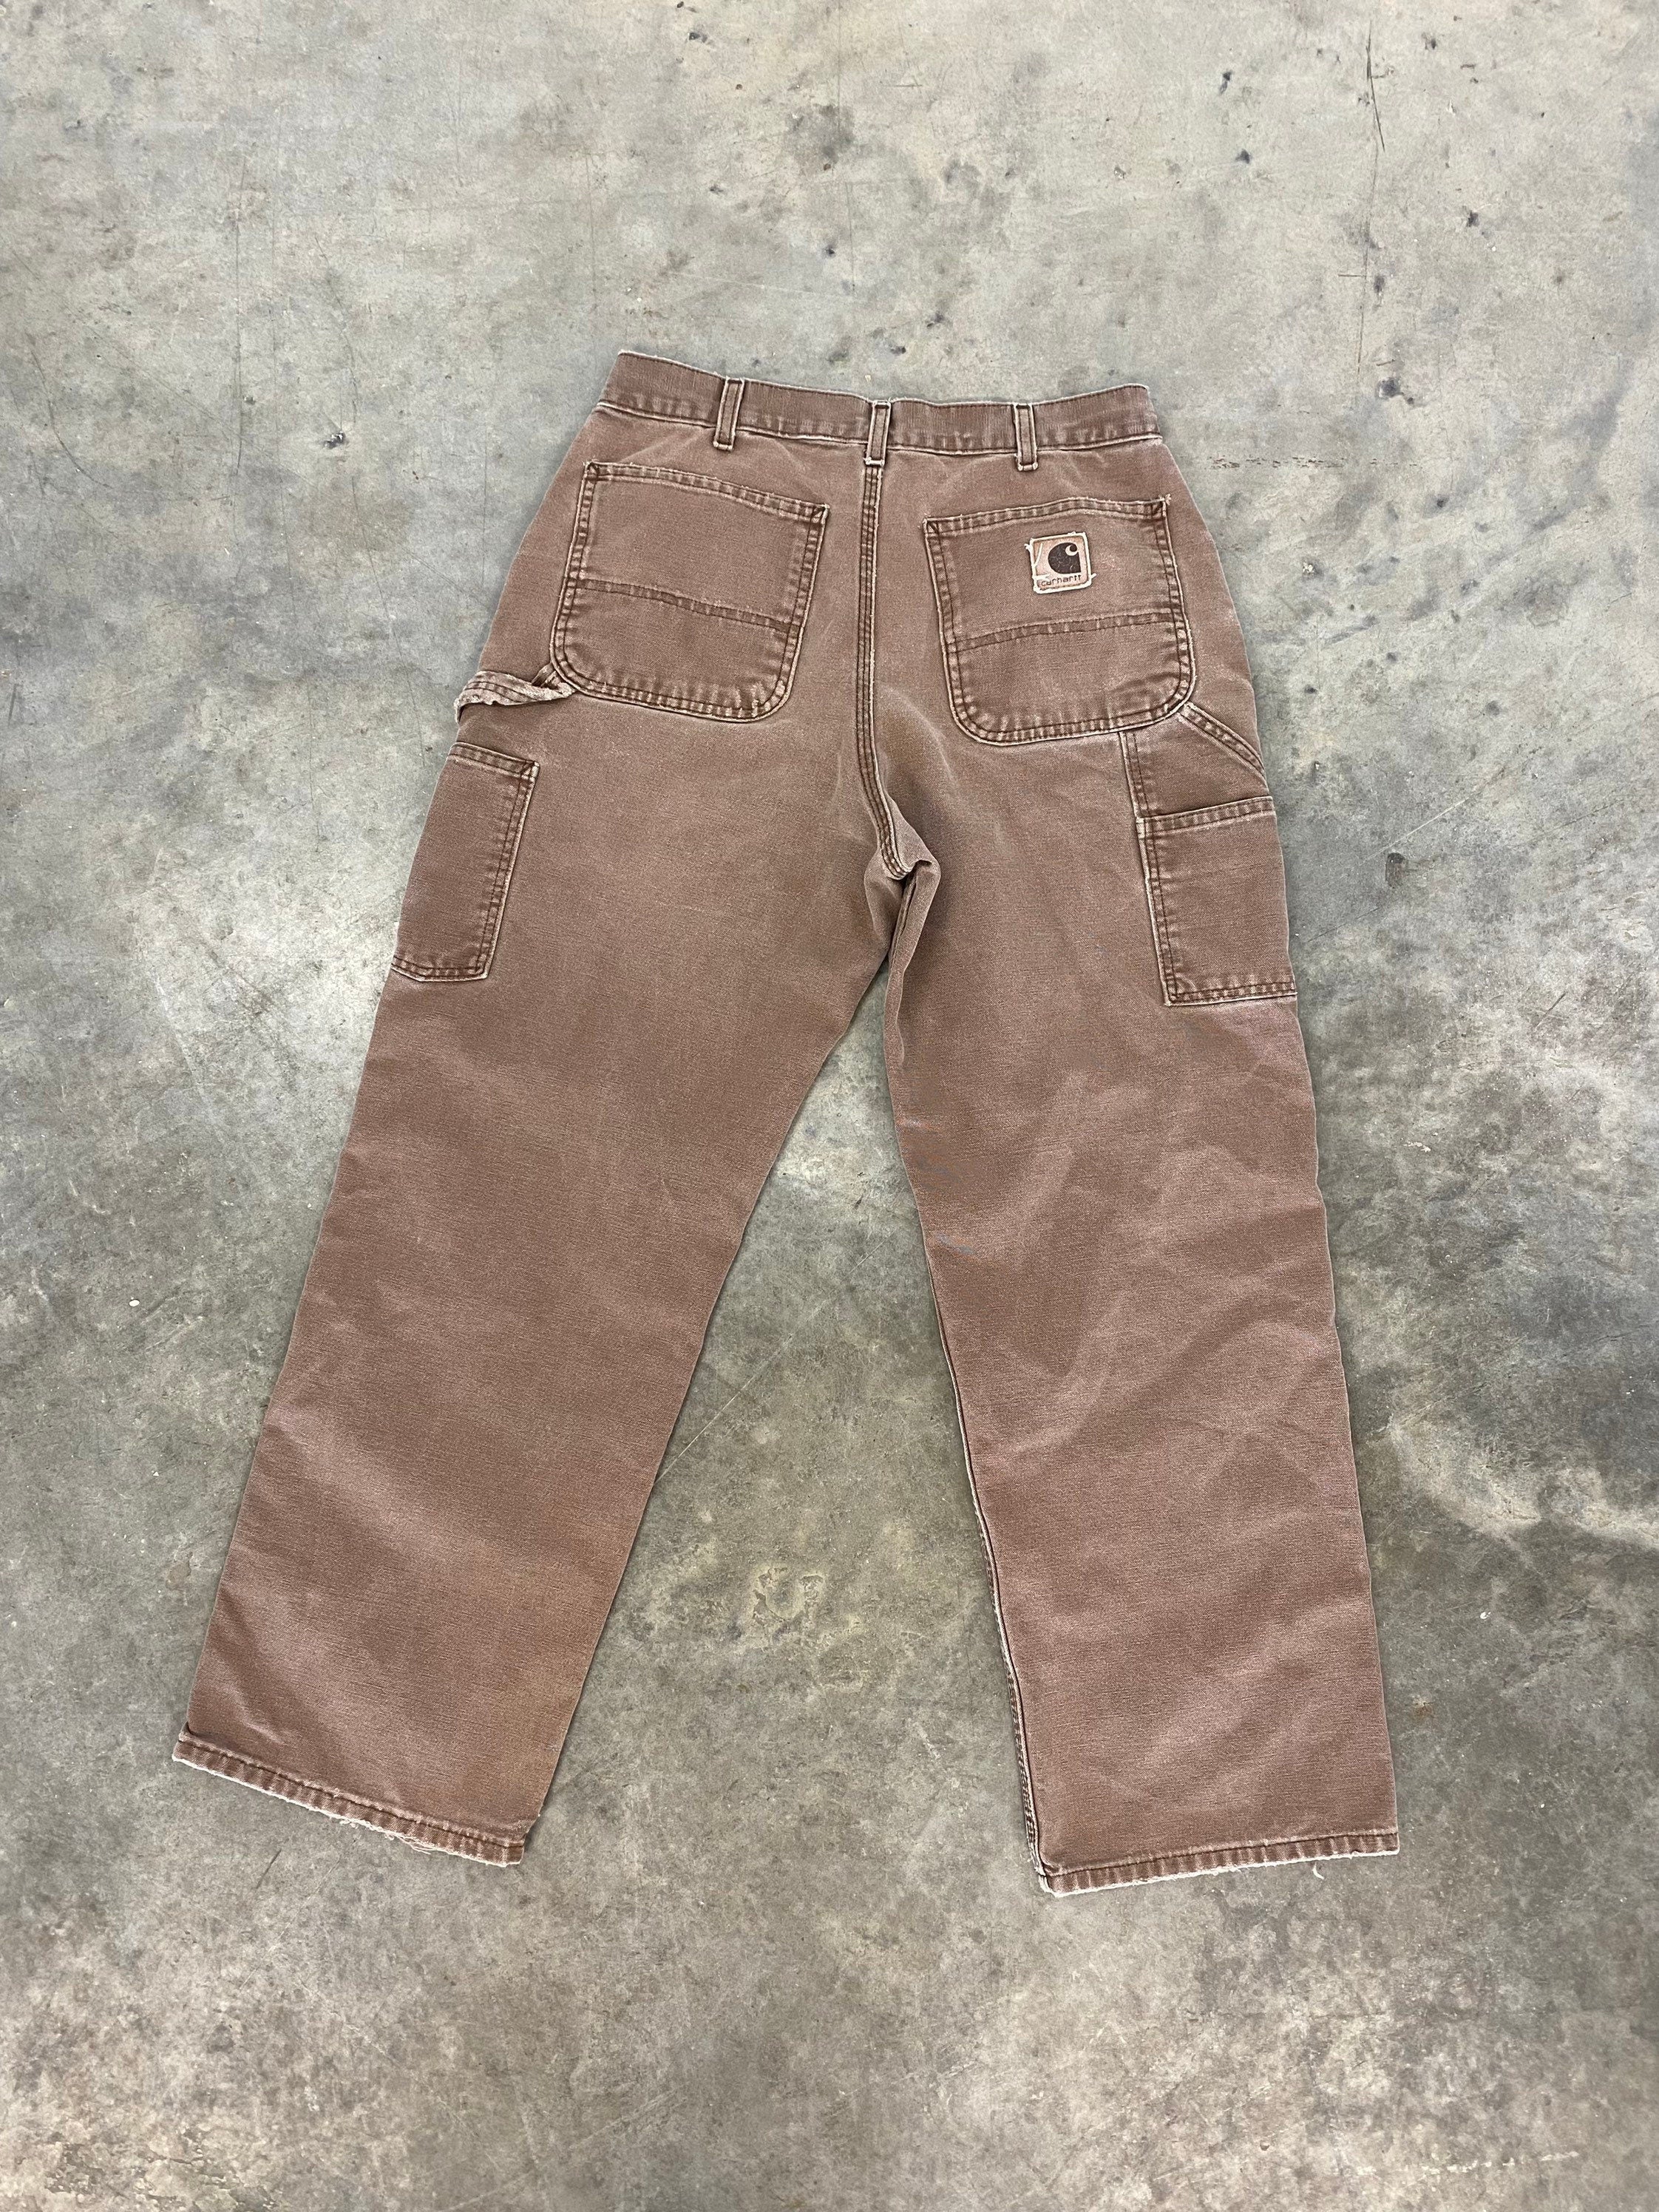 vintage pants : K014